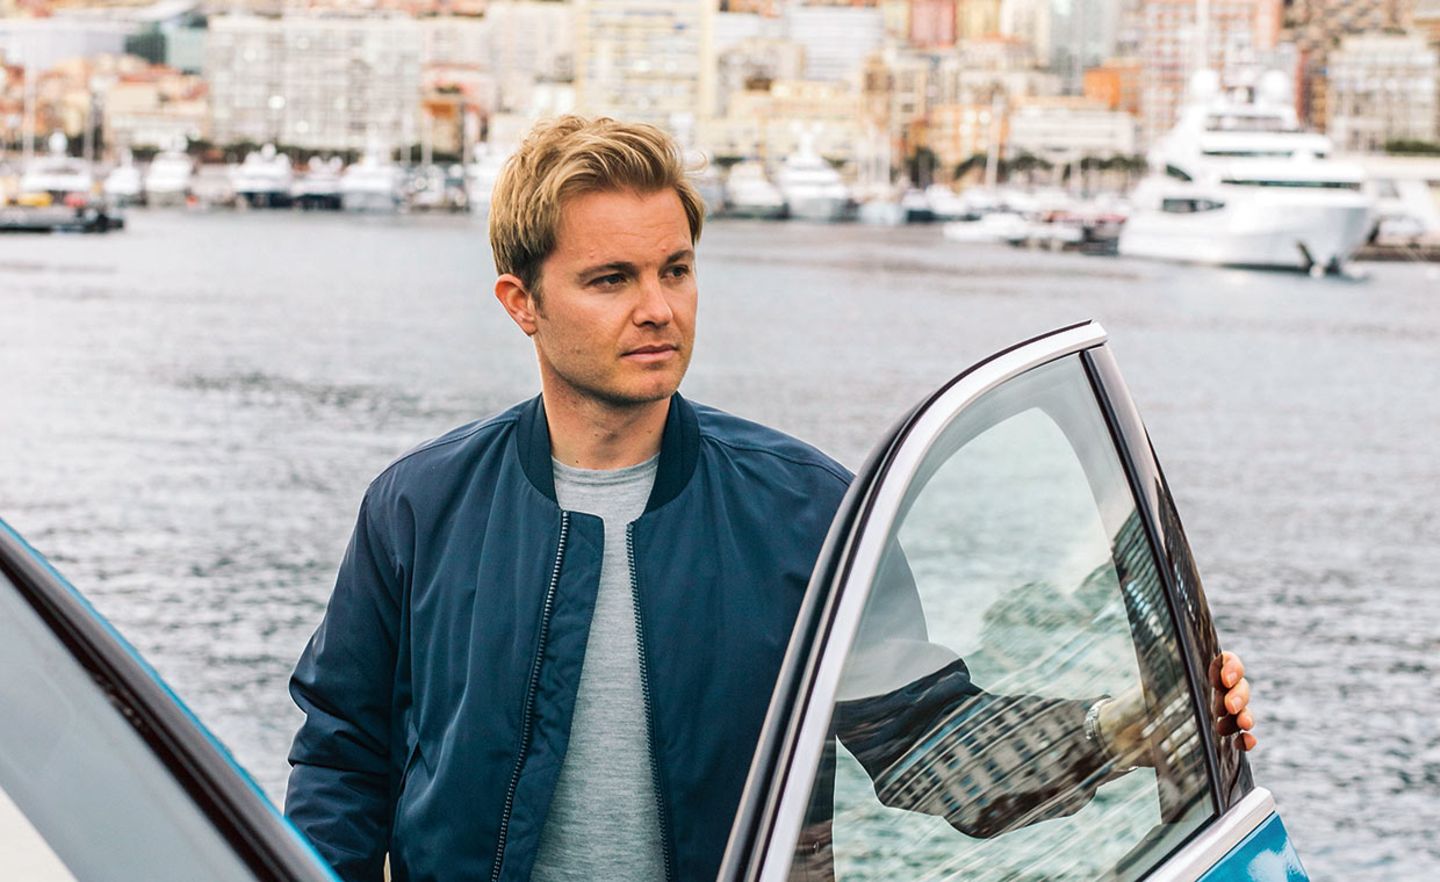 Nico Rosberg: Der frühere Profi-Rennfahrer investiert heute in Start-ups, die Technologien für nachhaltige Mobilität entwickeln